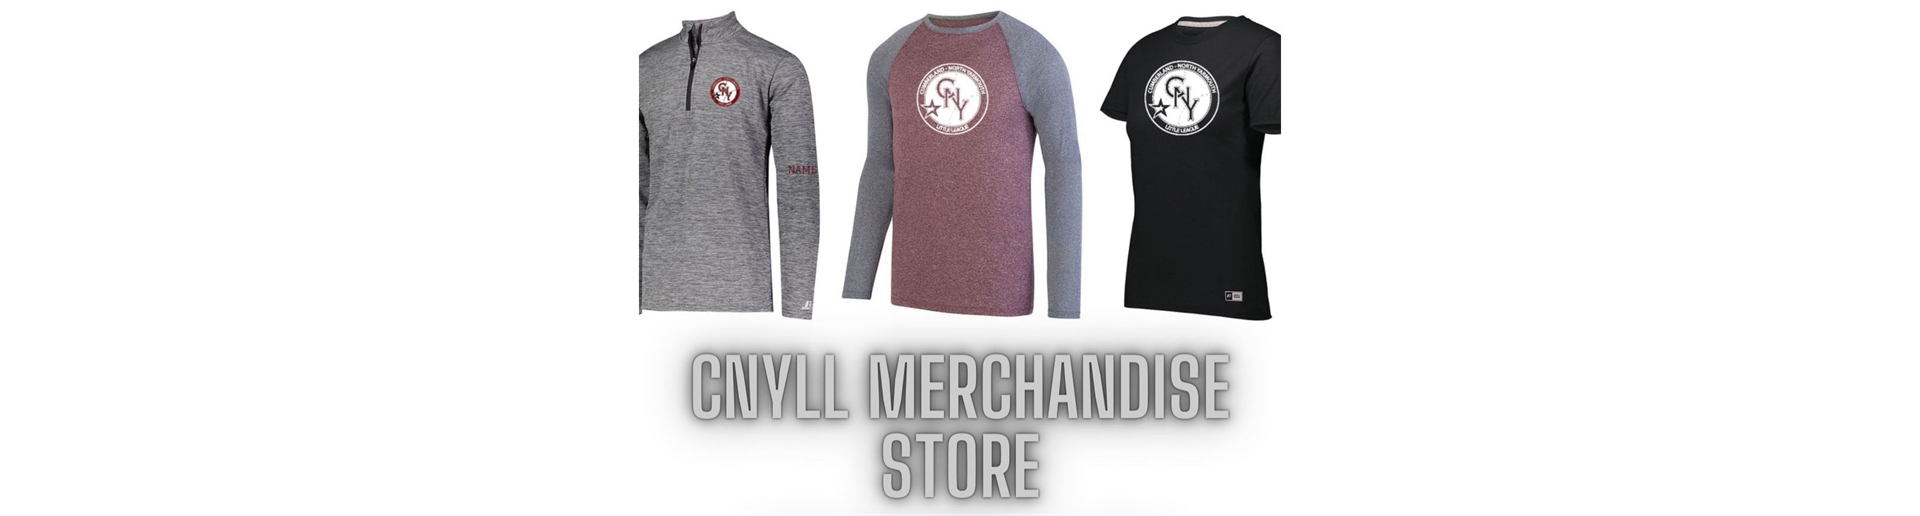 New CNYLL Merchandise Store